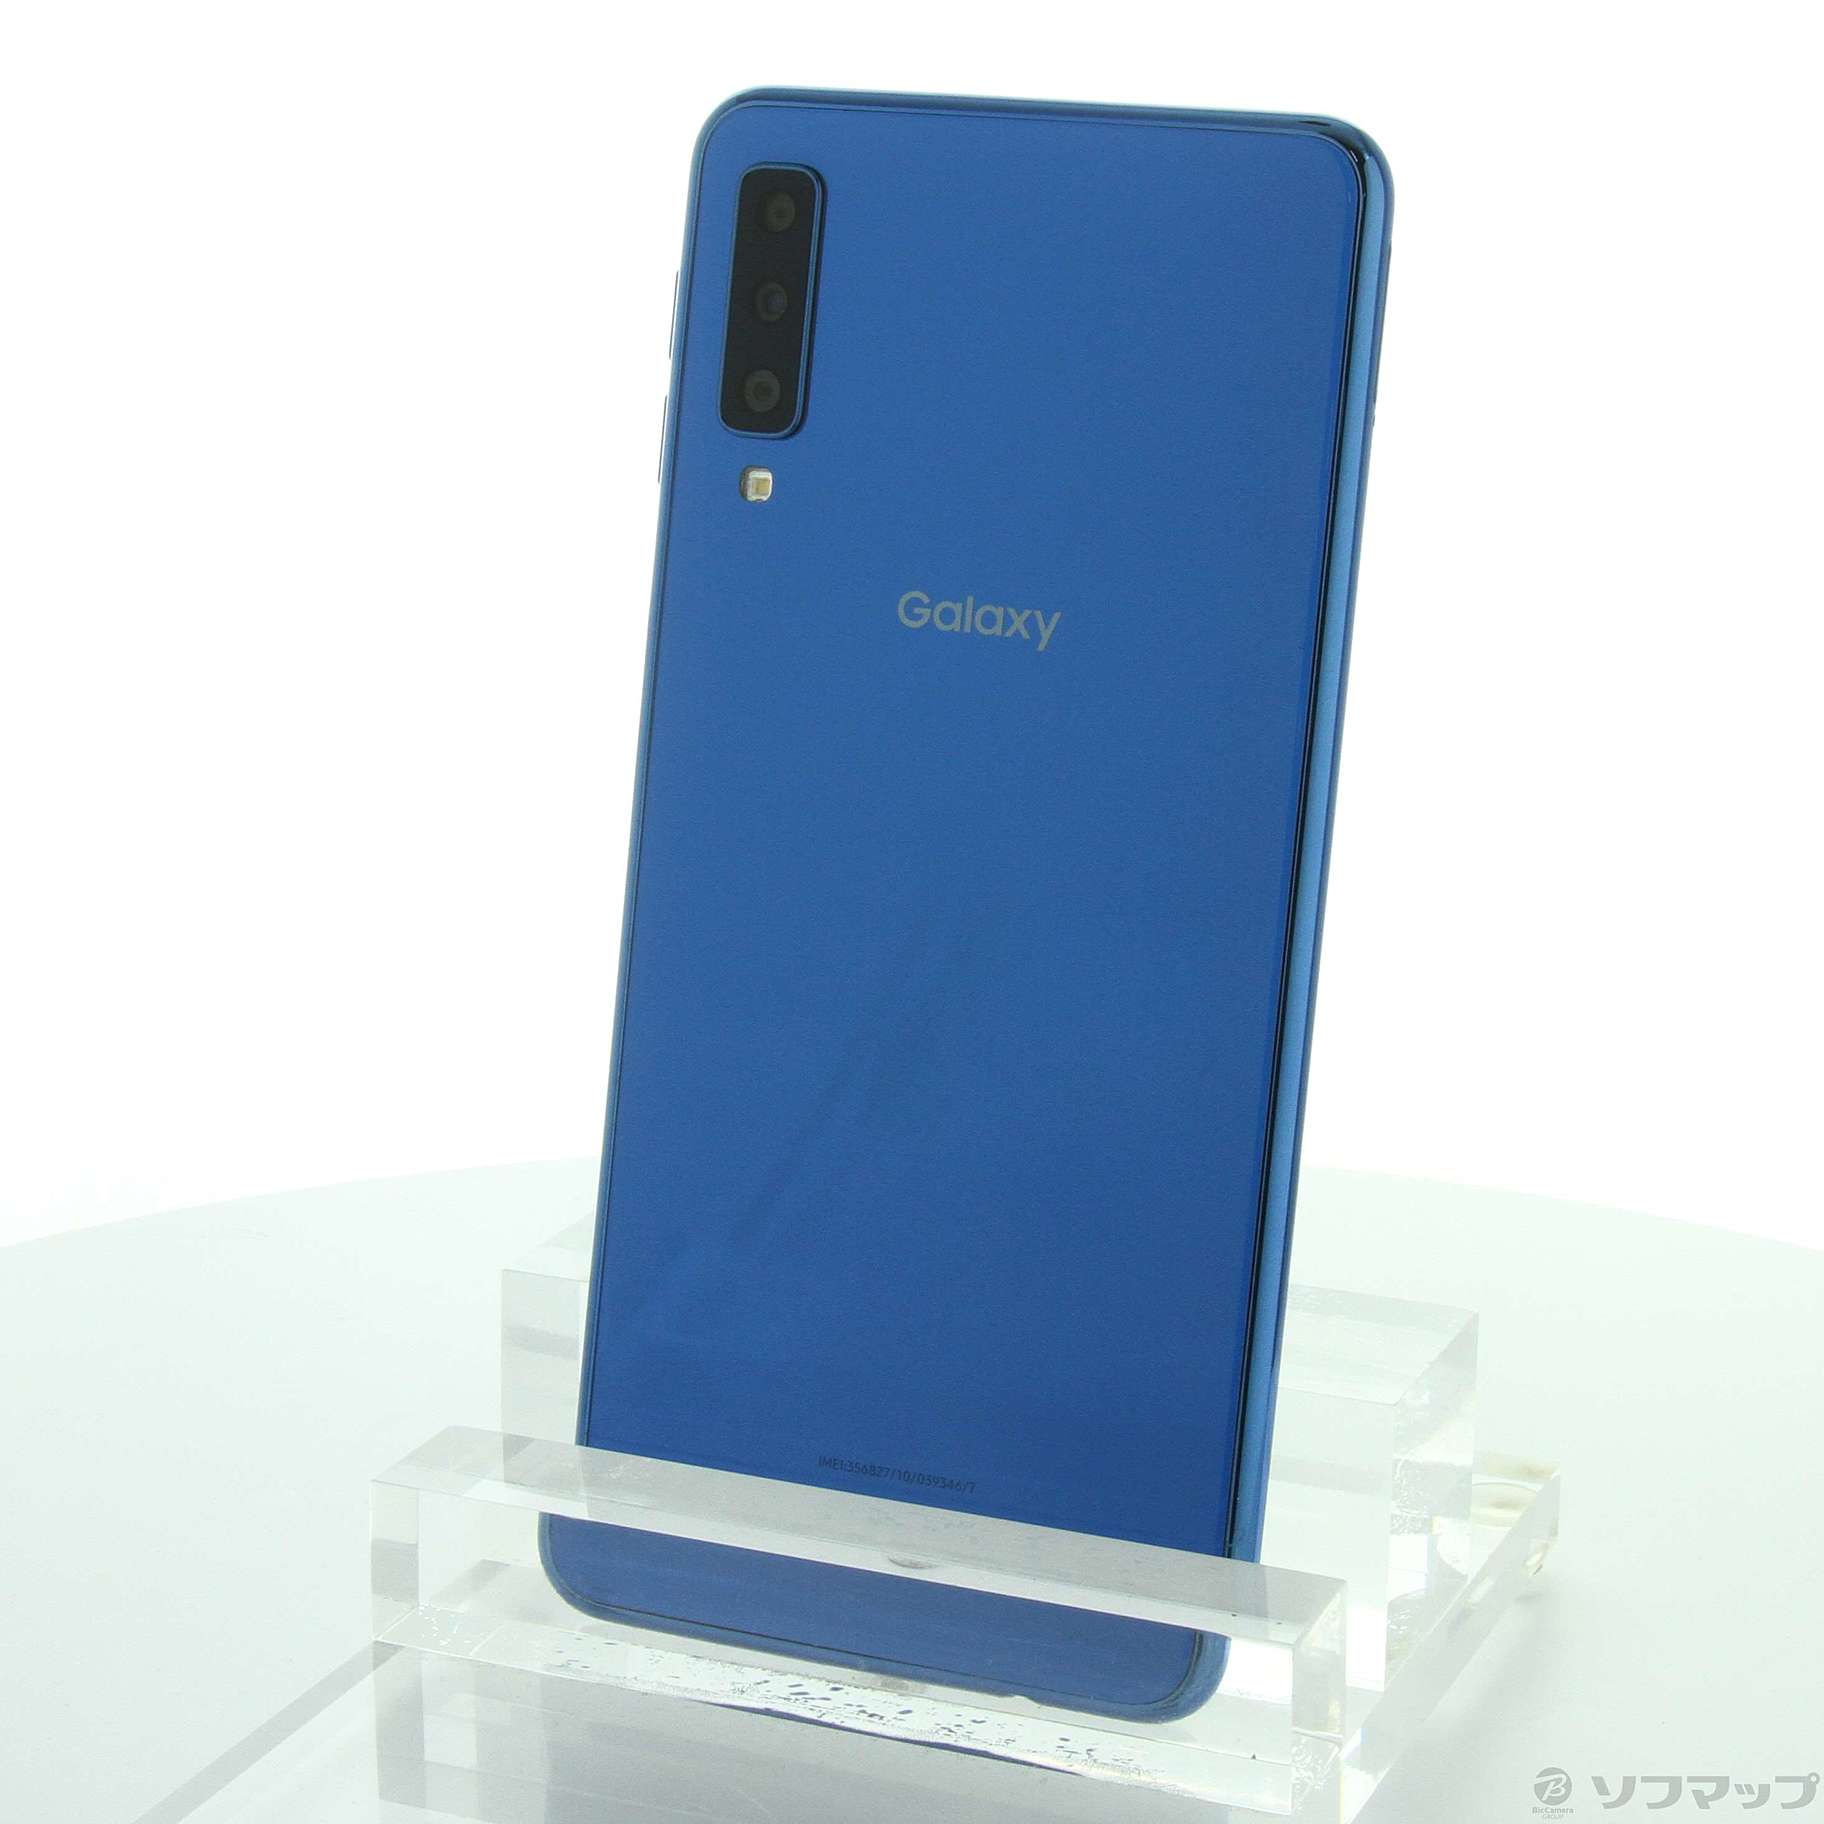 GALAXY A7 楽天版 64GB ブルー SM-A750C SIMフリー